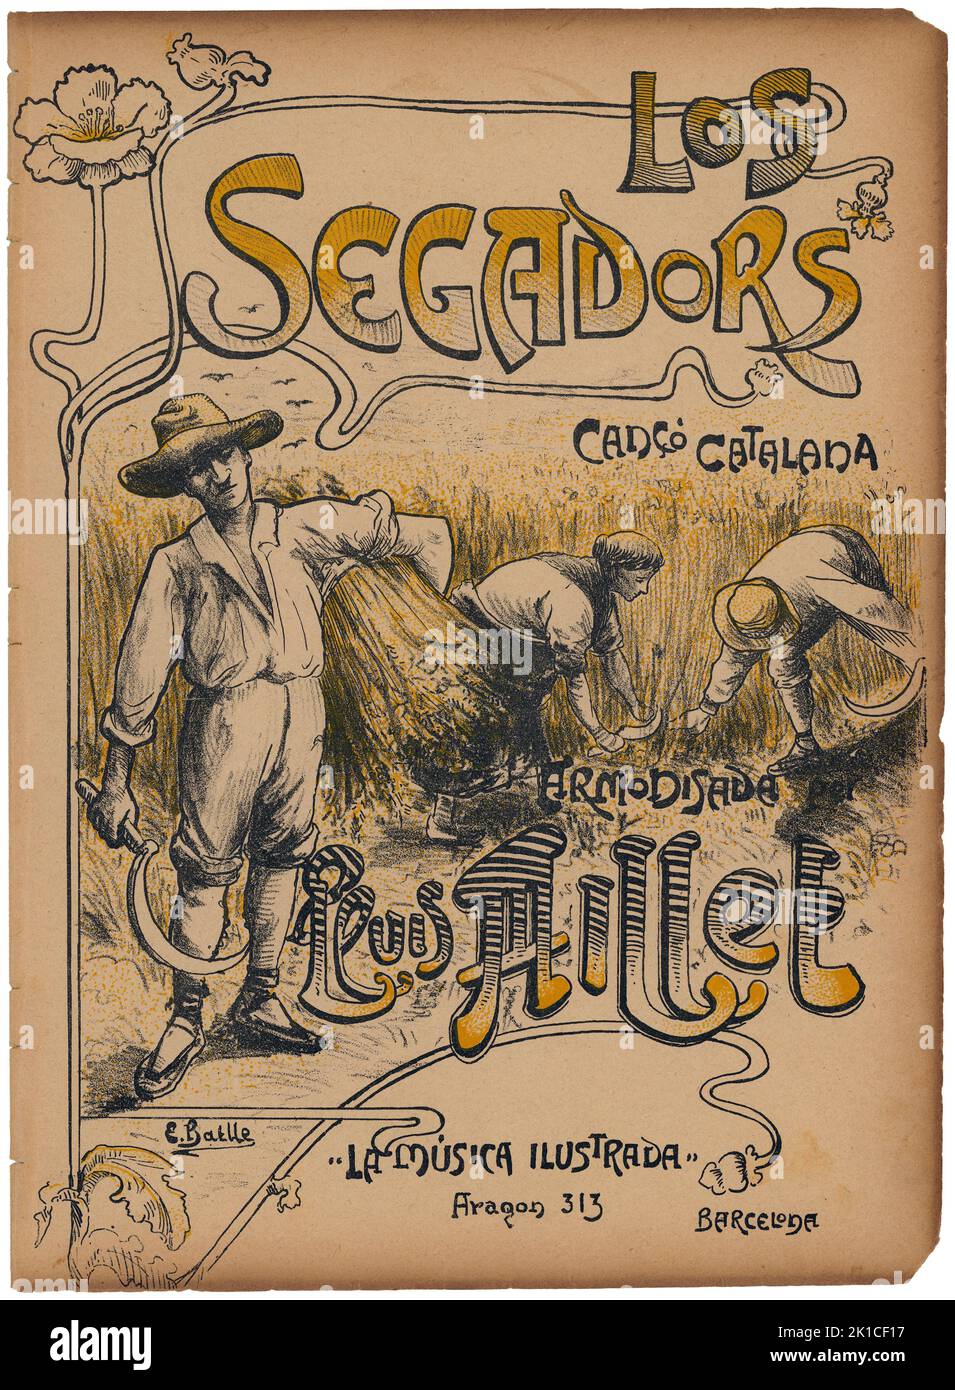 Partitura Musical del himno catalán Els Segadors, armonizada por Lluis Millet. Años 1932. Stockfoto